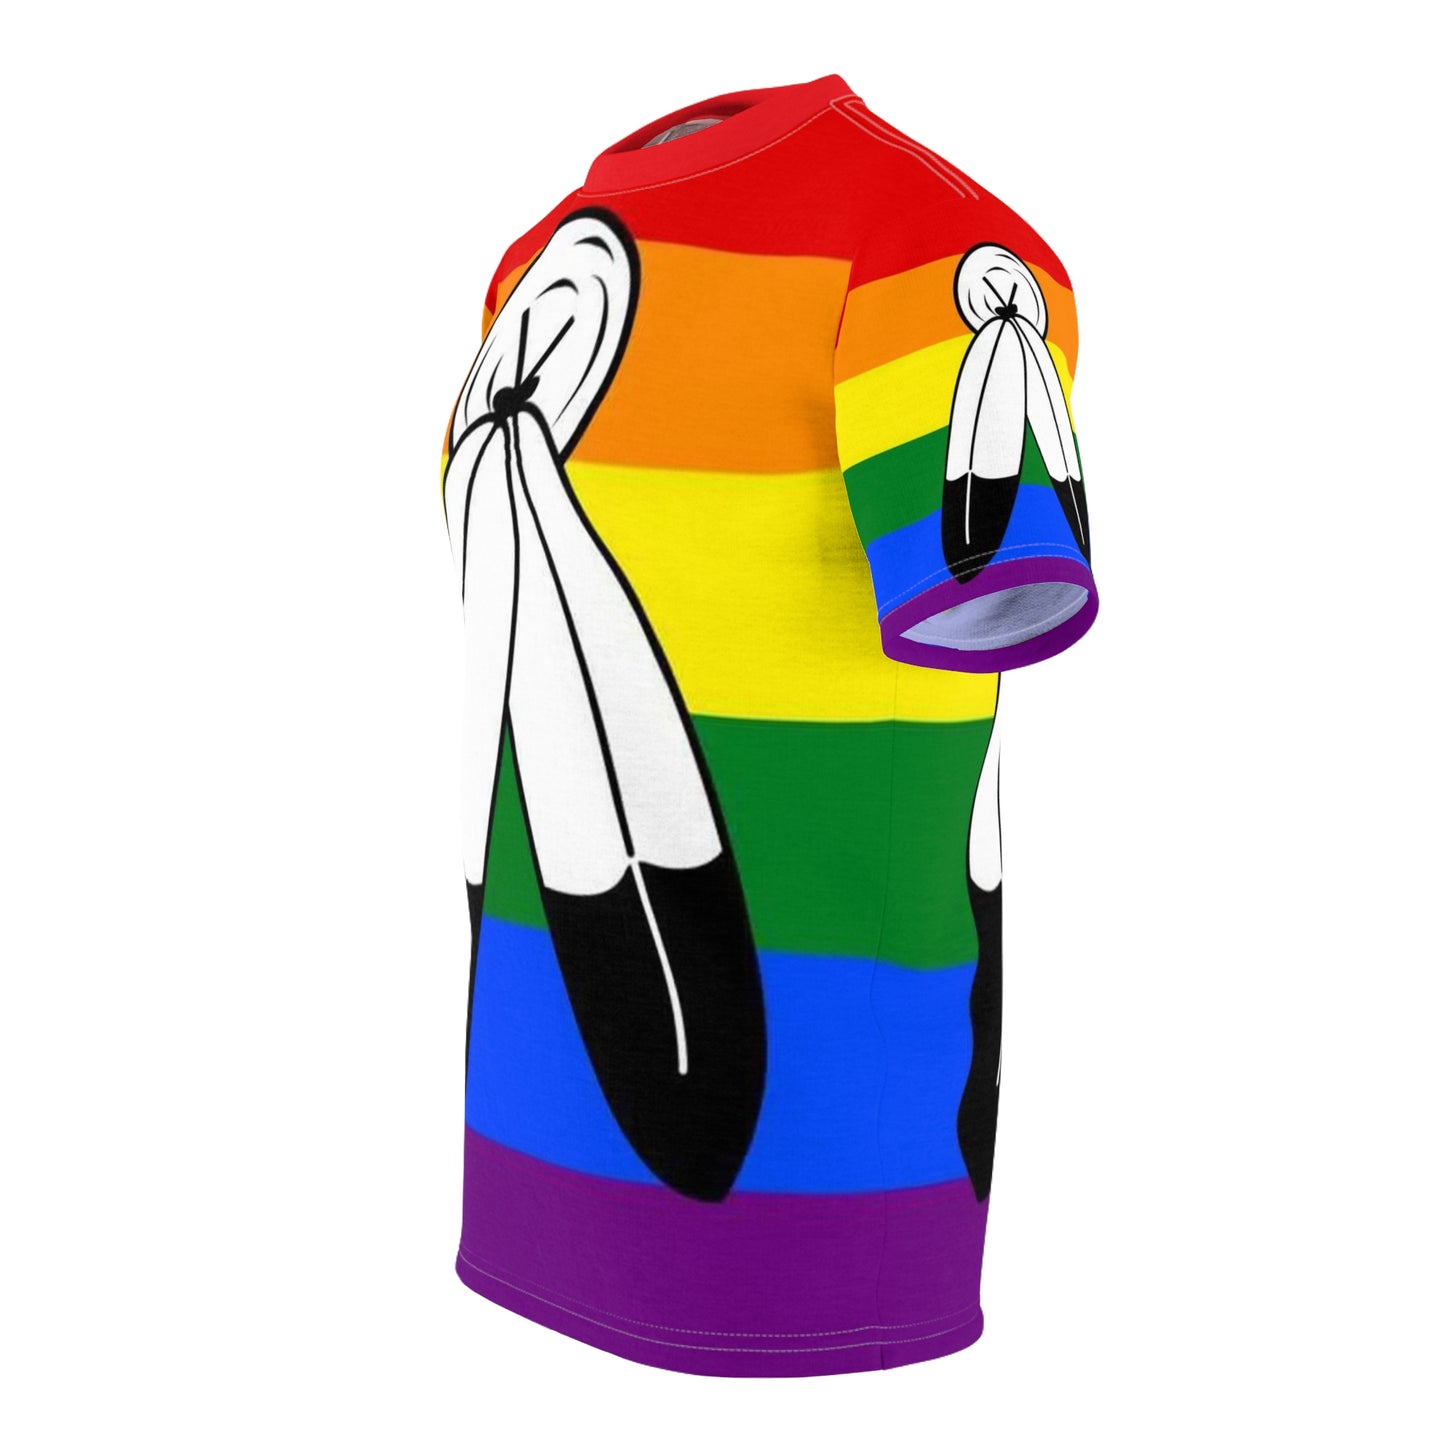 Two-Spirits Pride Unisex T-Shirt